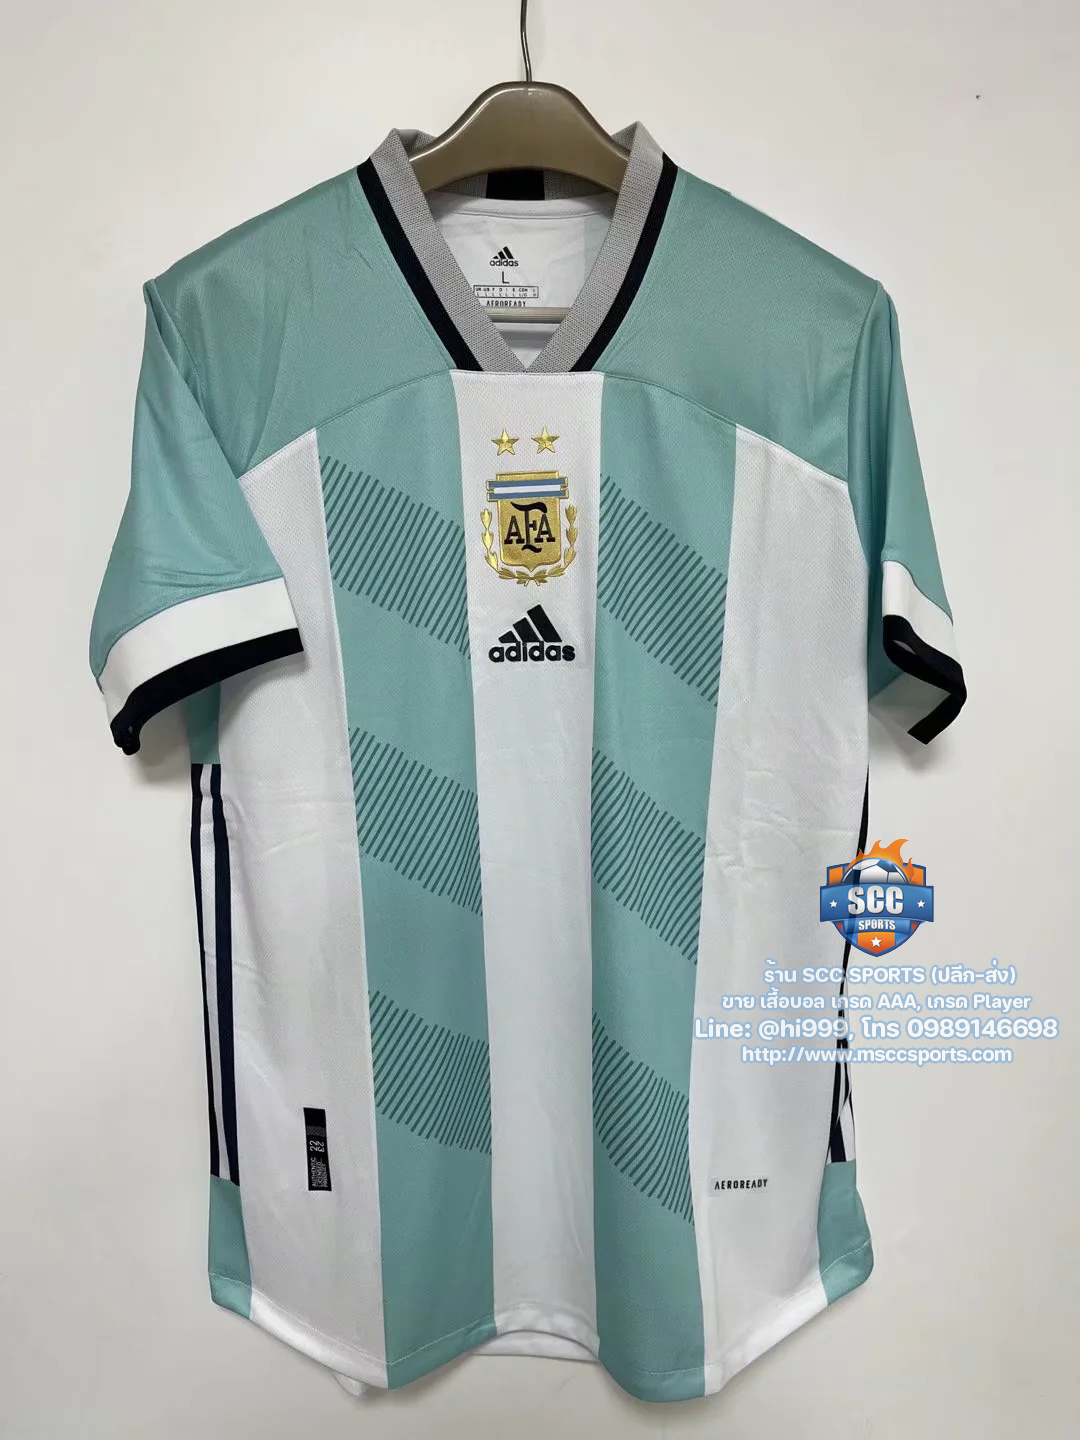 Images/Blog/pSgy5ID7-เสื้อบอล อาร์เจนติน่า อาเจนติน่า ทีมเหย้า สีฟ้าขาว 2022-23 เกรด AAA - Argentina home 2022-23 - SCC SPORTS.jpg